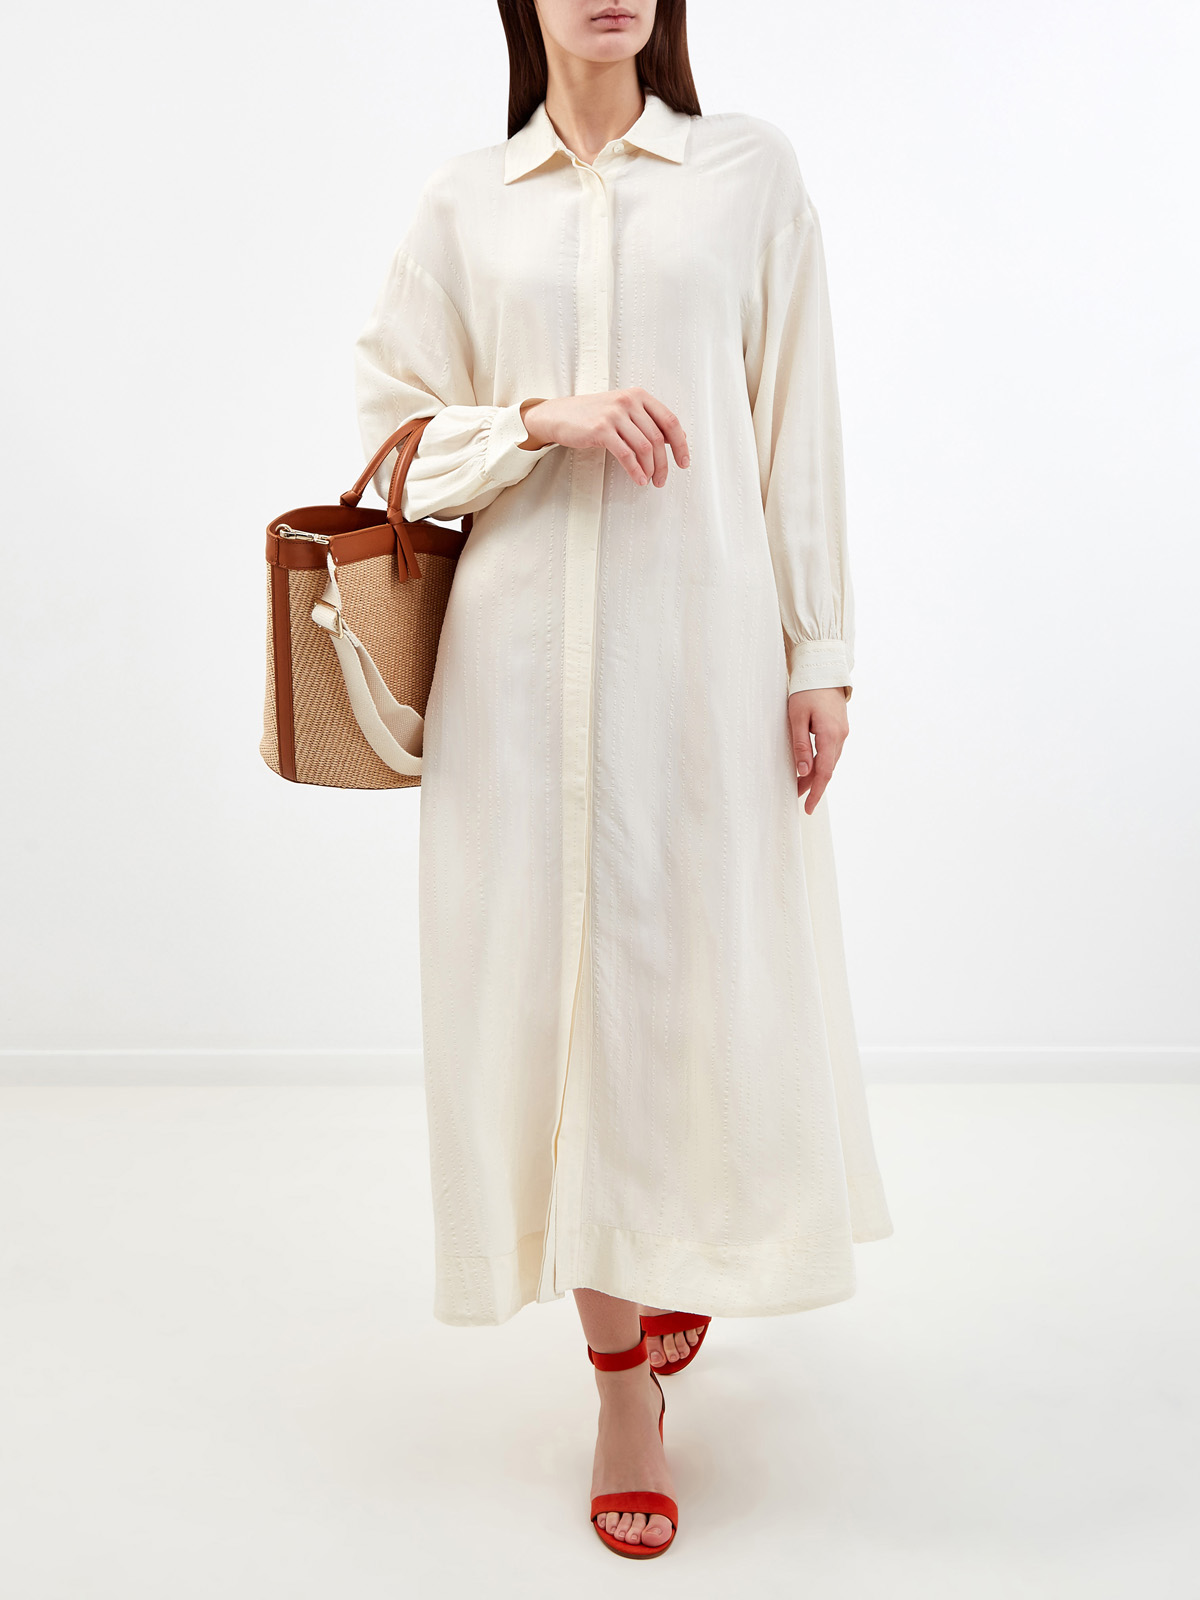 Кремовое платье-рубашка с отложным воротником и прострочкой RE VERA, цвет белый, размер M;XL;S - фото 2